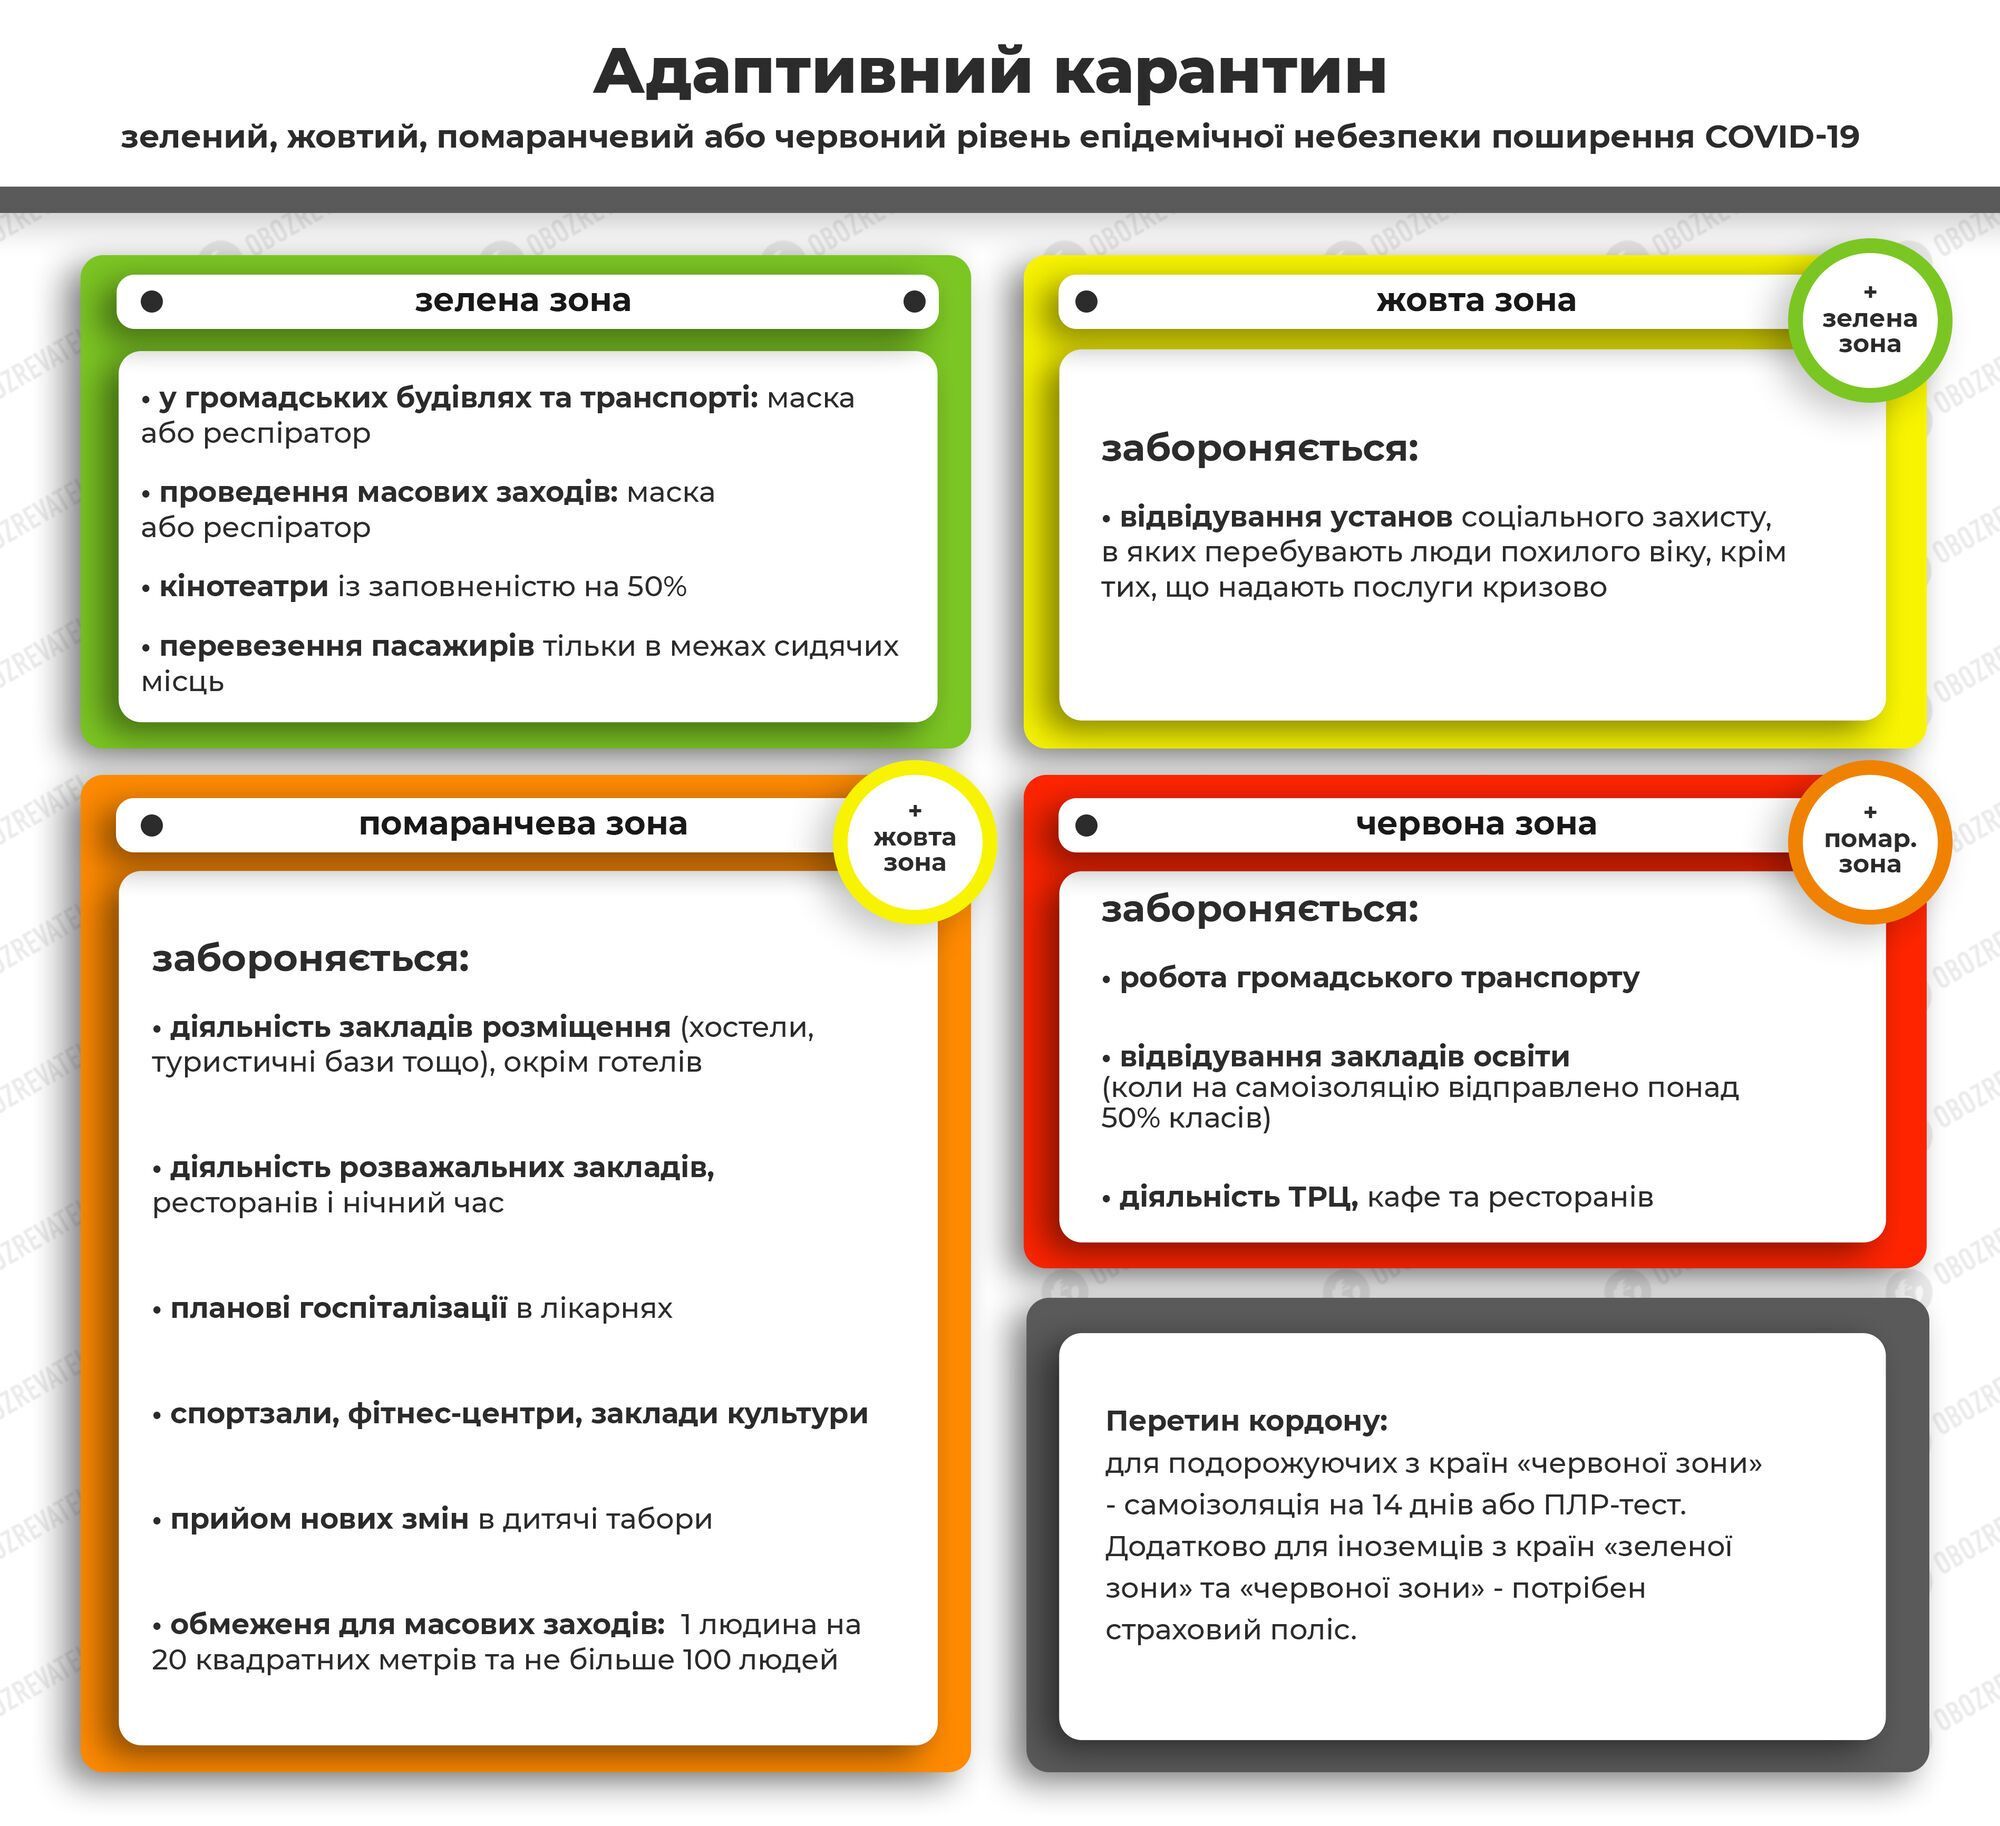 В Україні діє адаптивний карантин із поділом на 4 зони